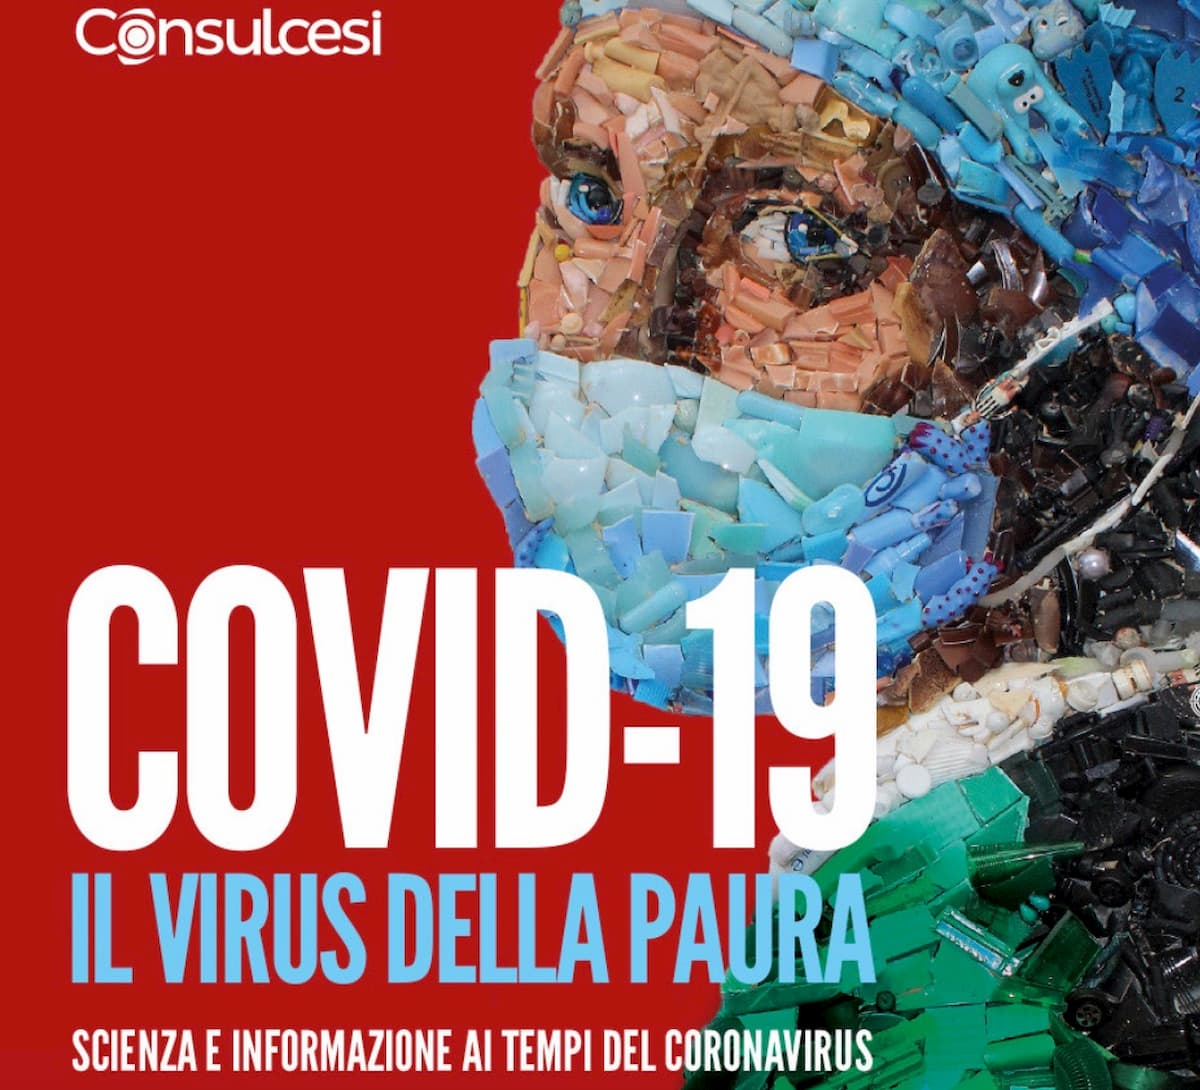 Coronavirus, arriva il vaccino anti infodemia e fake news: il libro Covid-19 il virus della paura